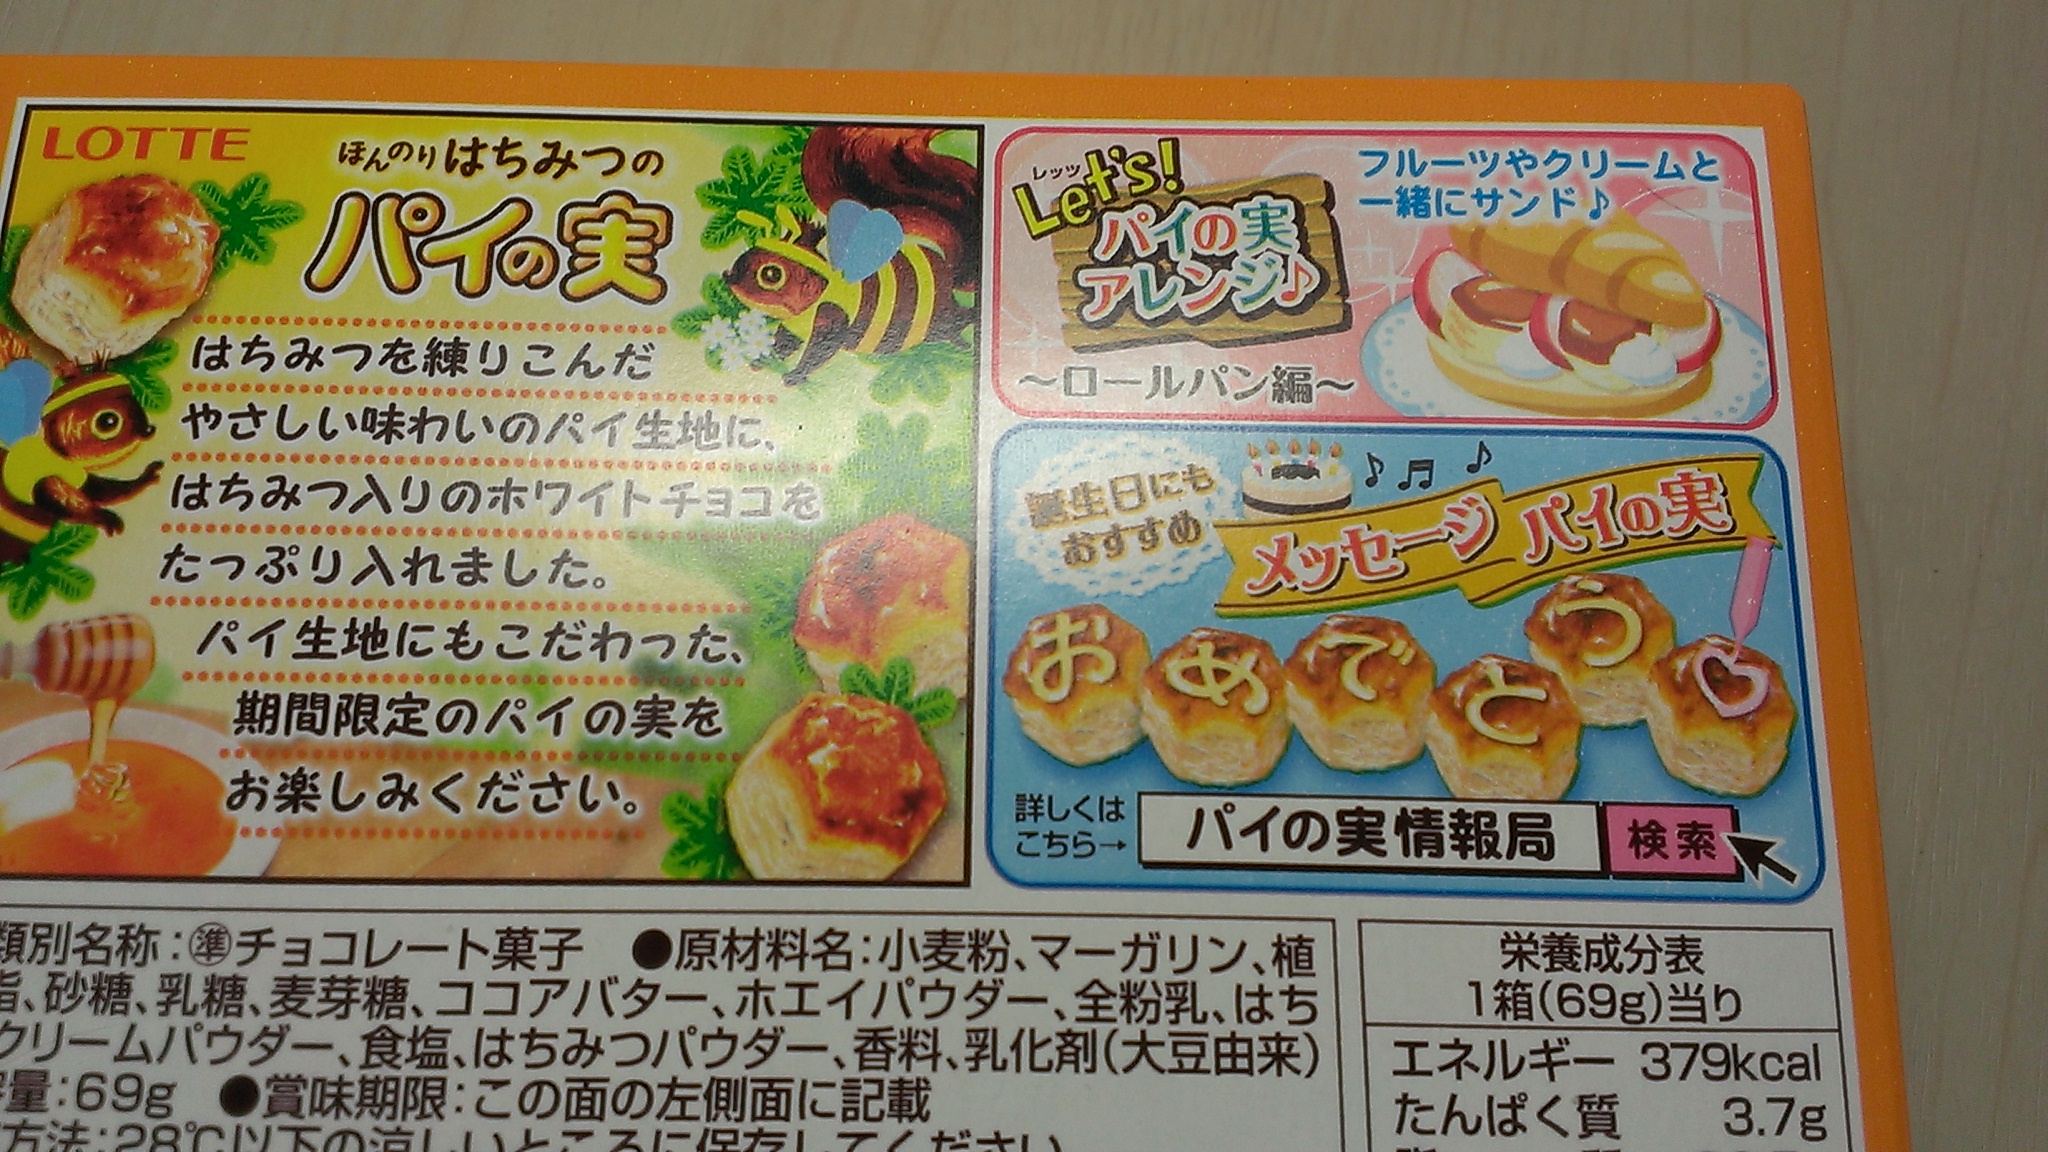 コンビニ スーパーの新作お菓子 アイスの体験レポート Lotteの代表作パイの実です